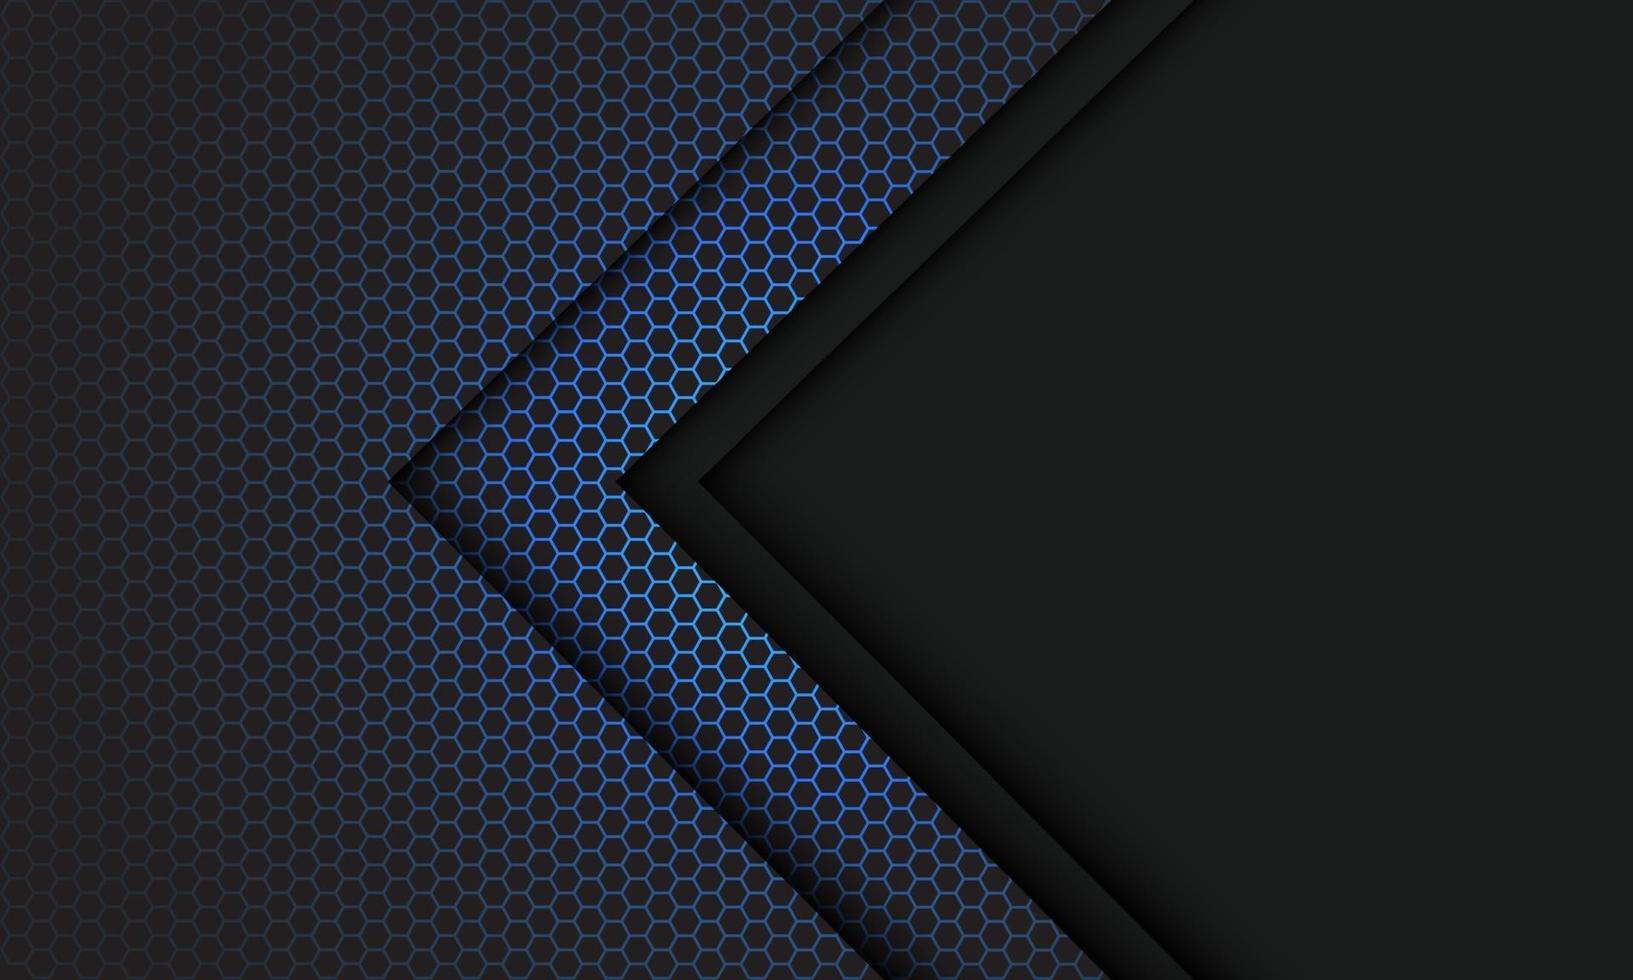 abstrait bleu hexagone maille direction de la flèche gris clair avec espace vide design illustration vectorielle de fond technologie futuriste moderne vecteur